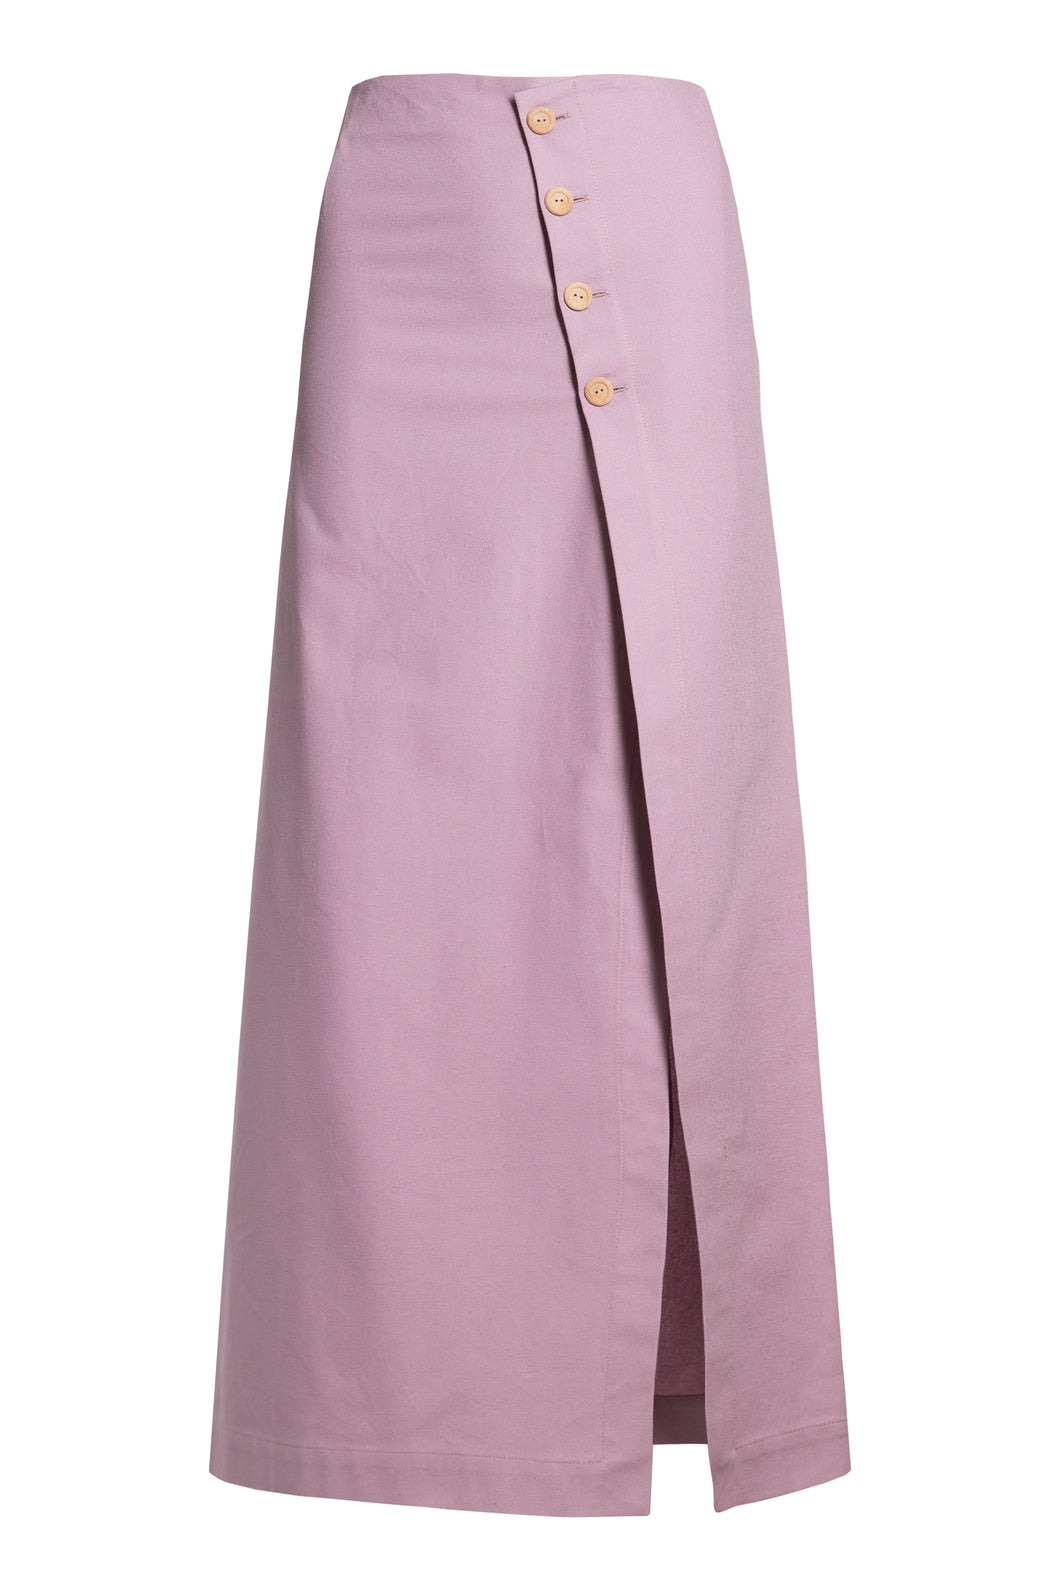 Edna skirt / lilac